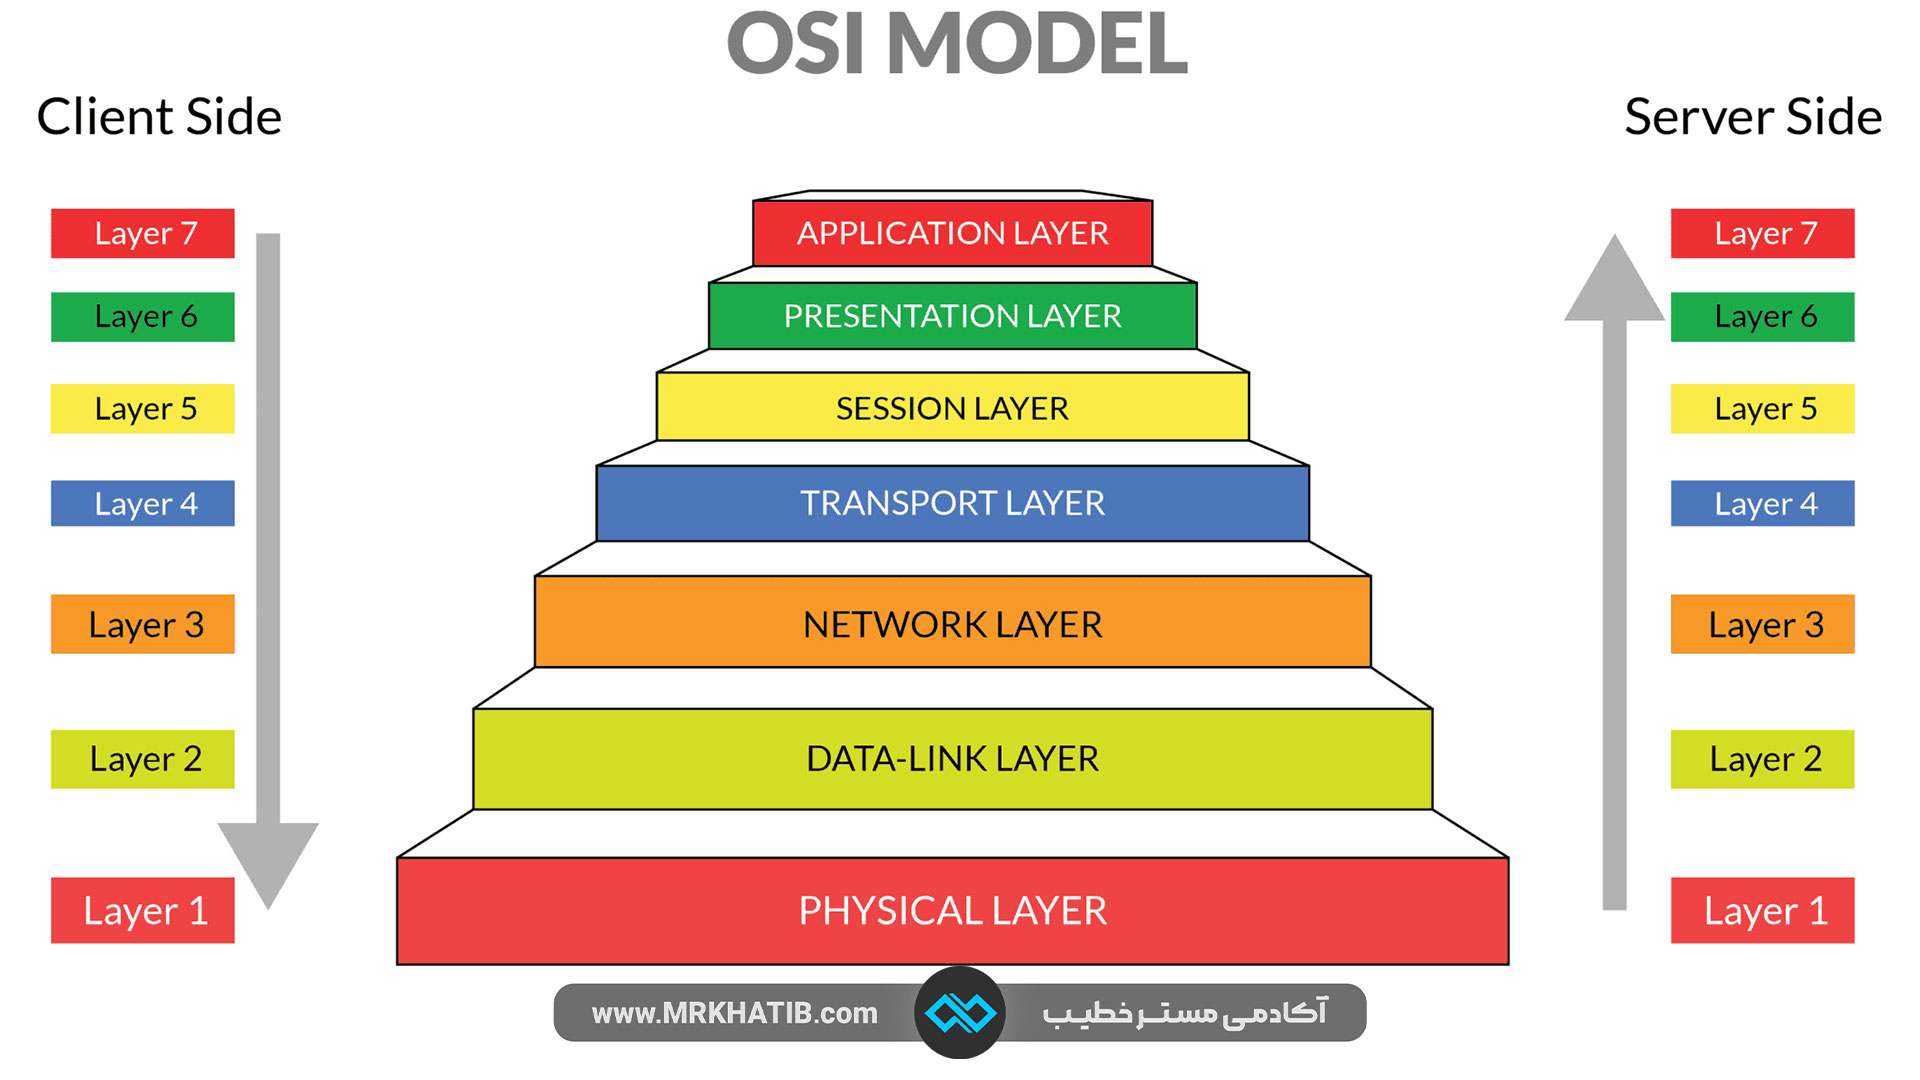 هفت لایه مدل OSI چیست؟